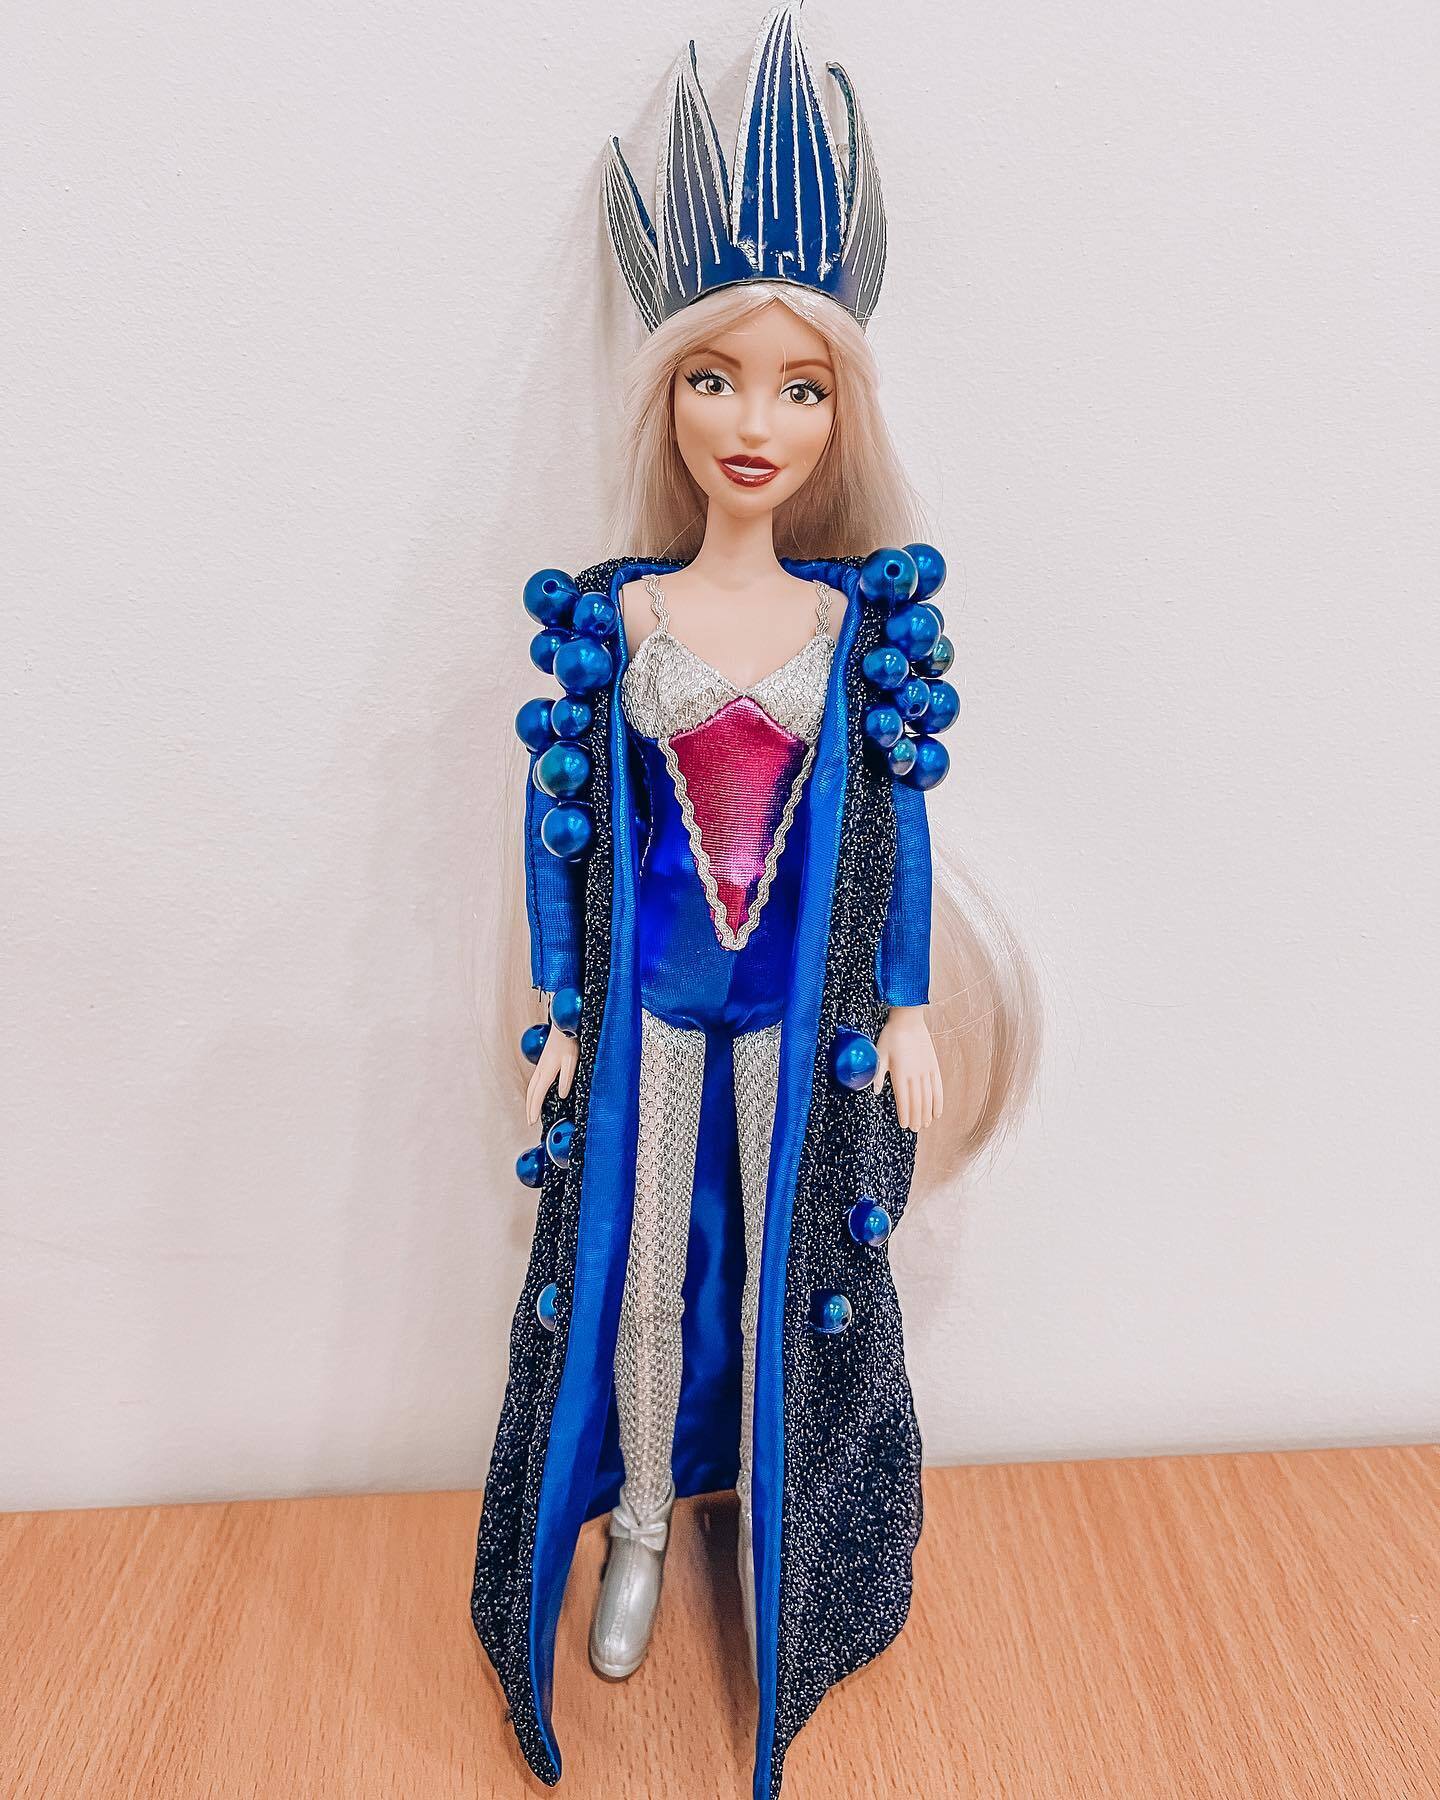 "Будуть ще й співати моїм голосом": Полякова створила колекцію ляльок на честь себе. Фото